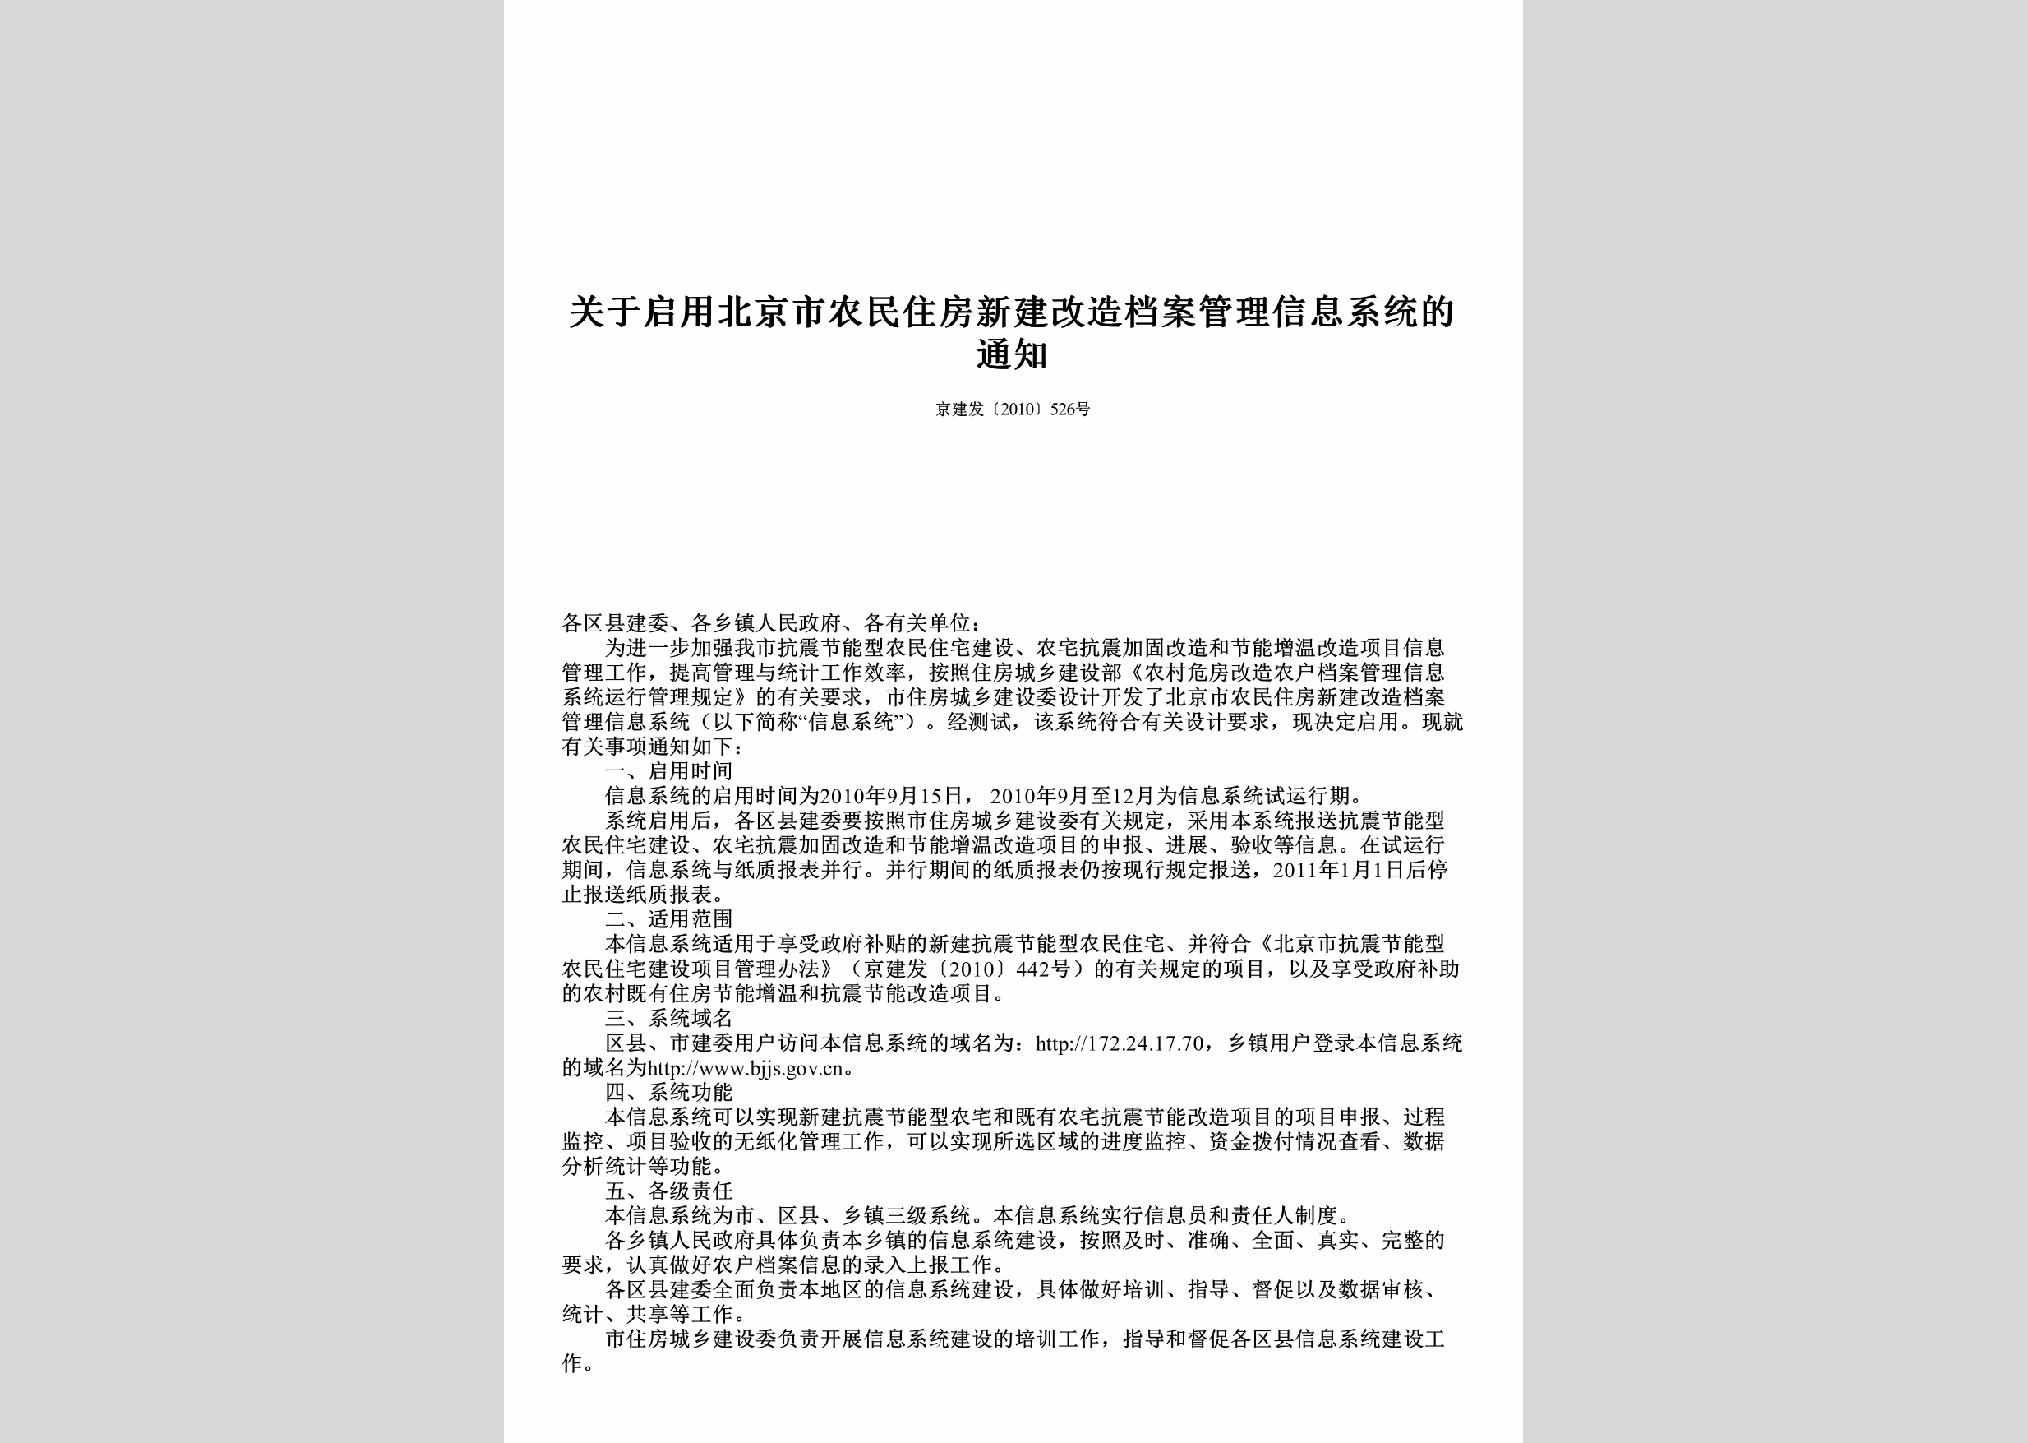 京建发[2010]526号：关于启用北京市农民住房新建改造档案管理信息系统的通知